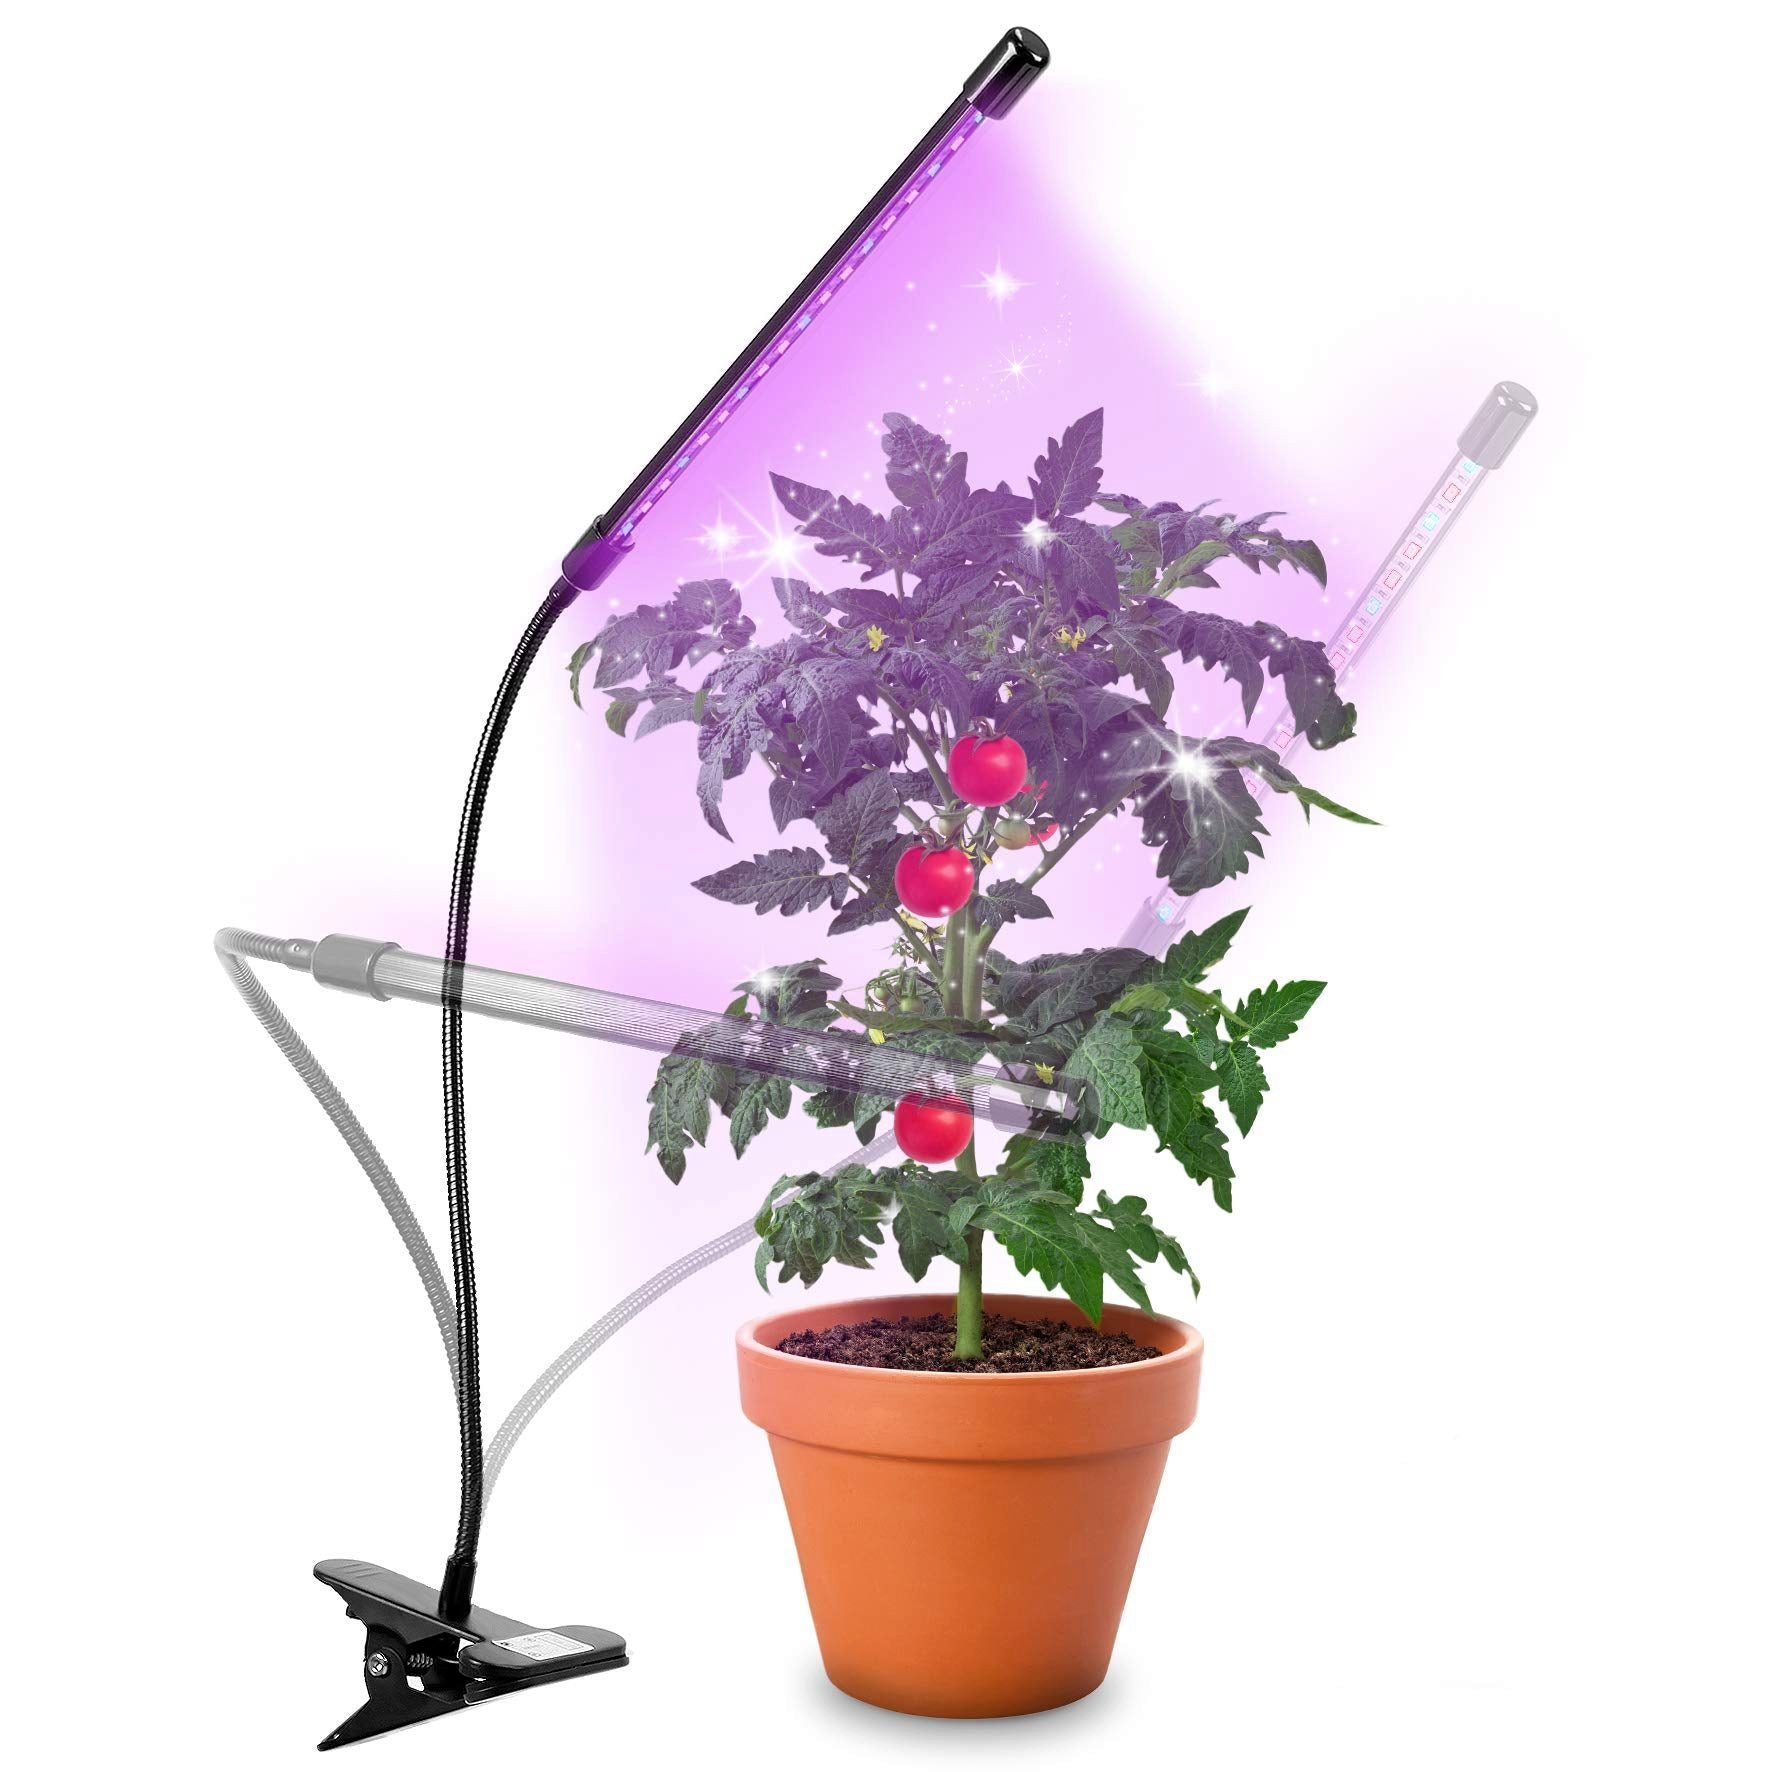 Duronic Pflanzenlampe, GLC12 Pflanzenlampe, Vollspektrum Wachstumslampe mit  18x rote & blaue LED-Lampen, 3 Farbmodi, Pflanzenleuchte mit Schwanenhals  in 6 Lichtstärken, 20W Pflanzenlicht für Pflanzen und Kräuter